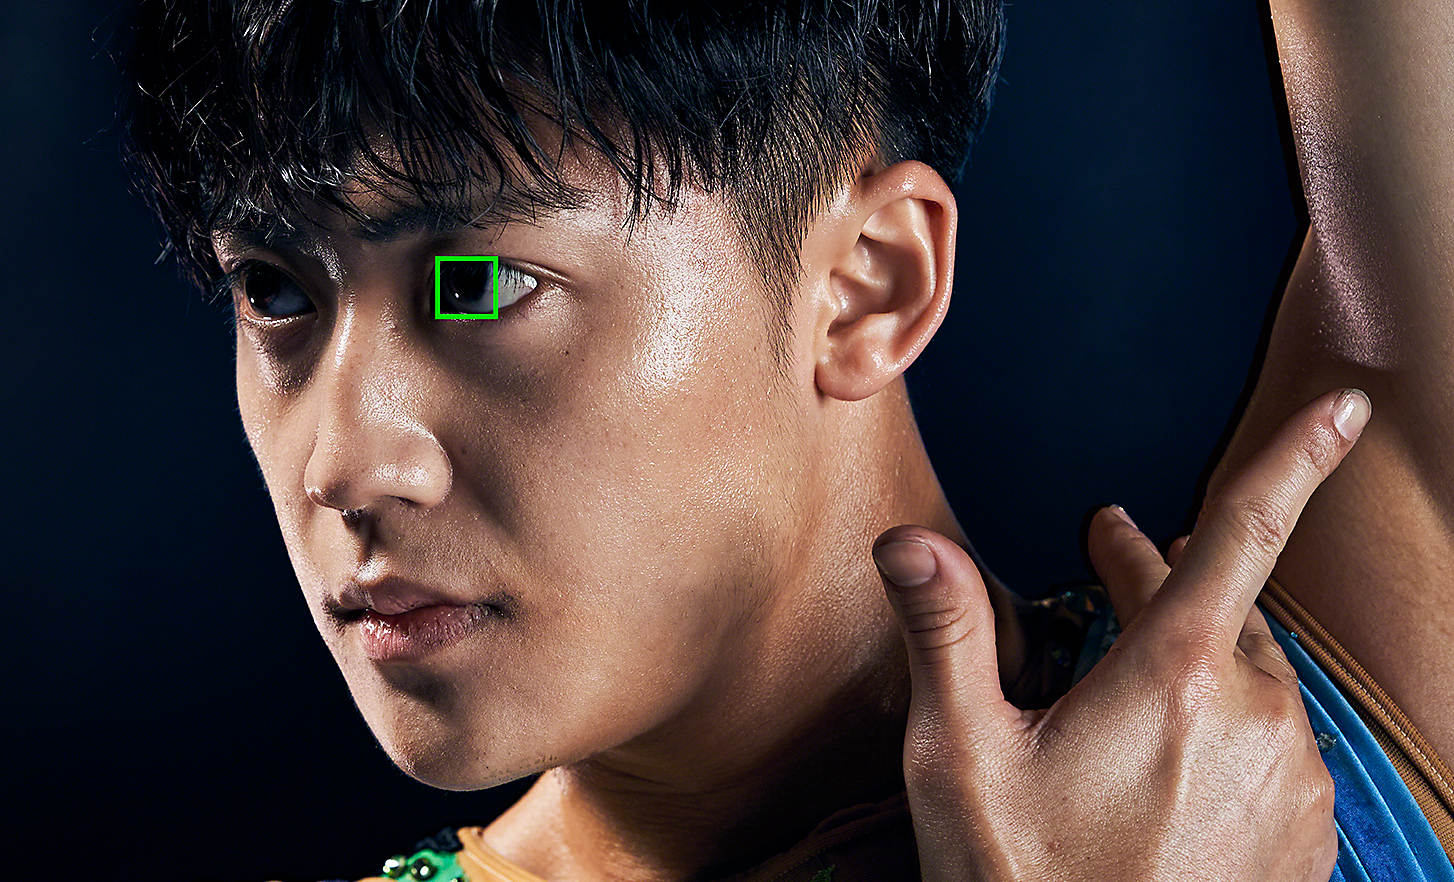 Retrato de un gimnasta hecho con un objetivo de 125 mm. Un cuadro verde sobre uno de sus ojos representa el Eye AF en tiempo real